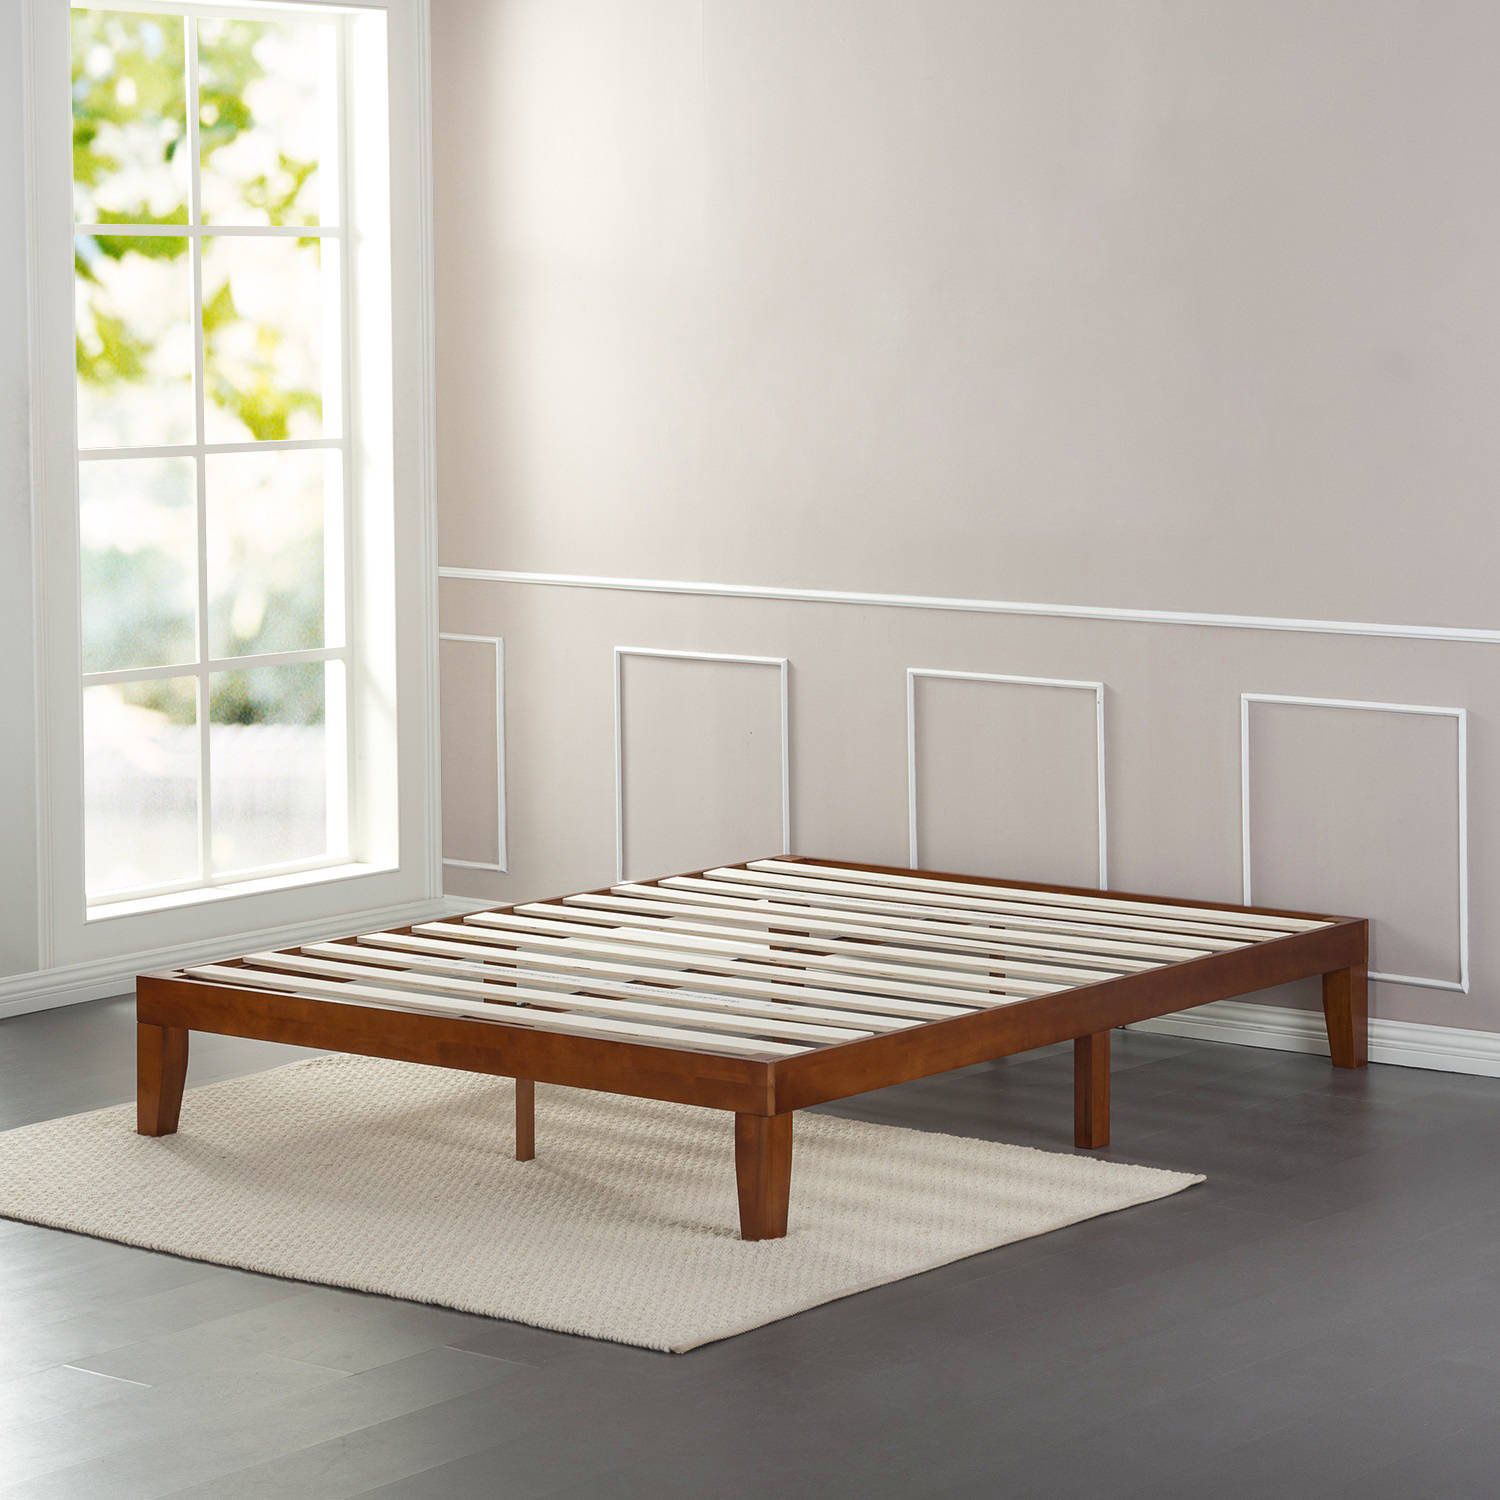 Zinus Delux Wood Platform Queen Bed Frame